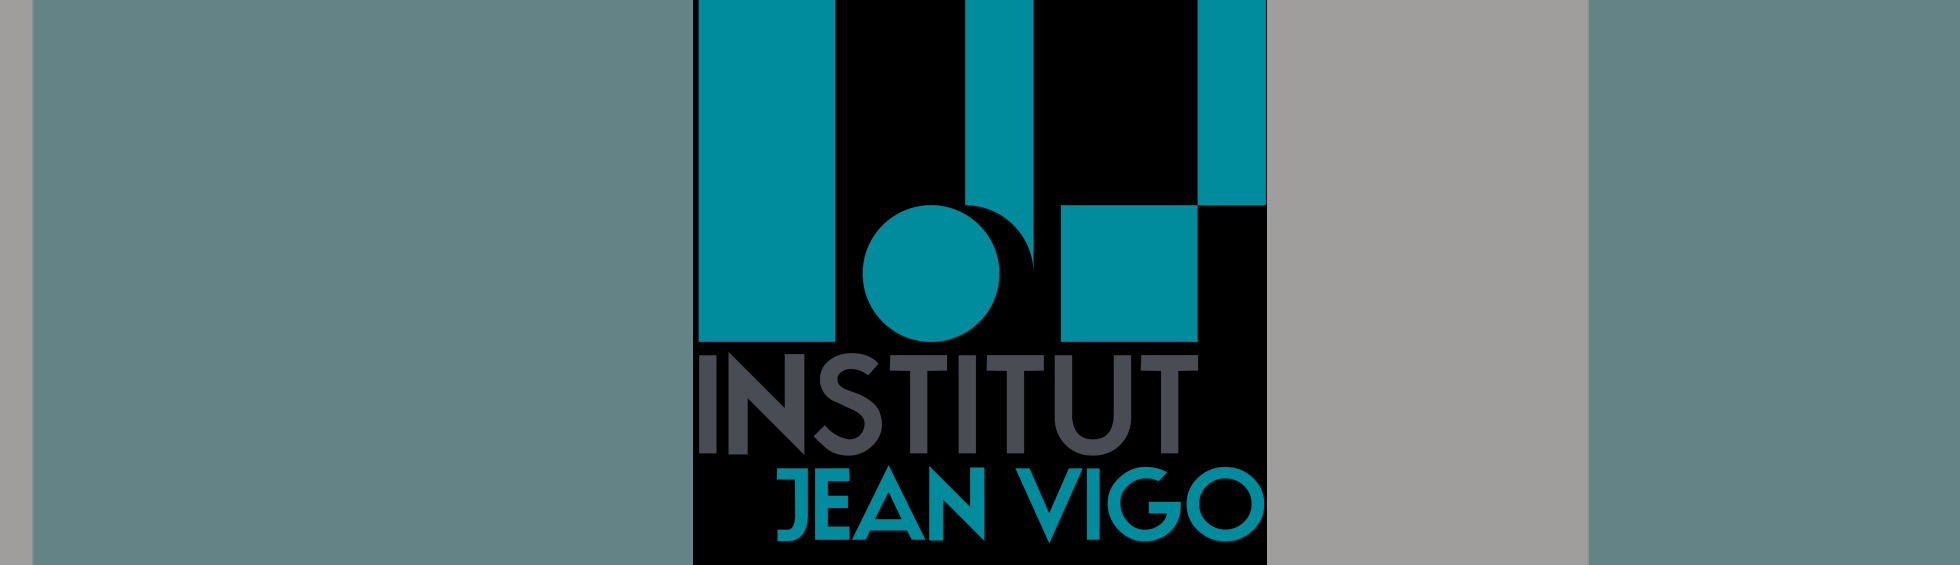 logo Institut Jean Vigo